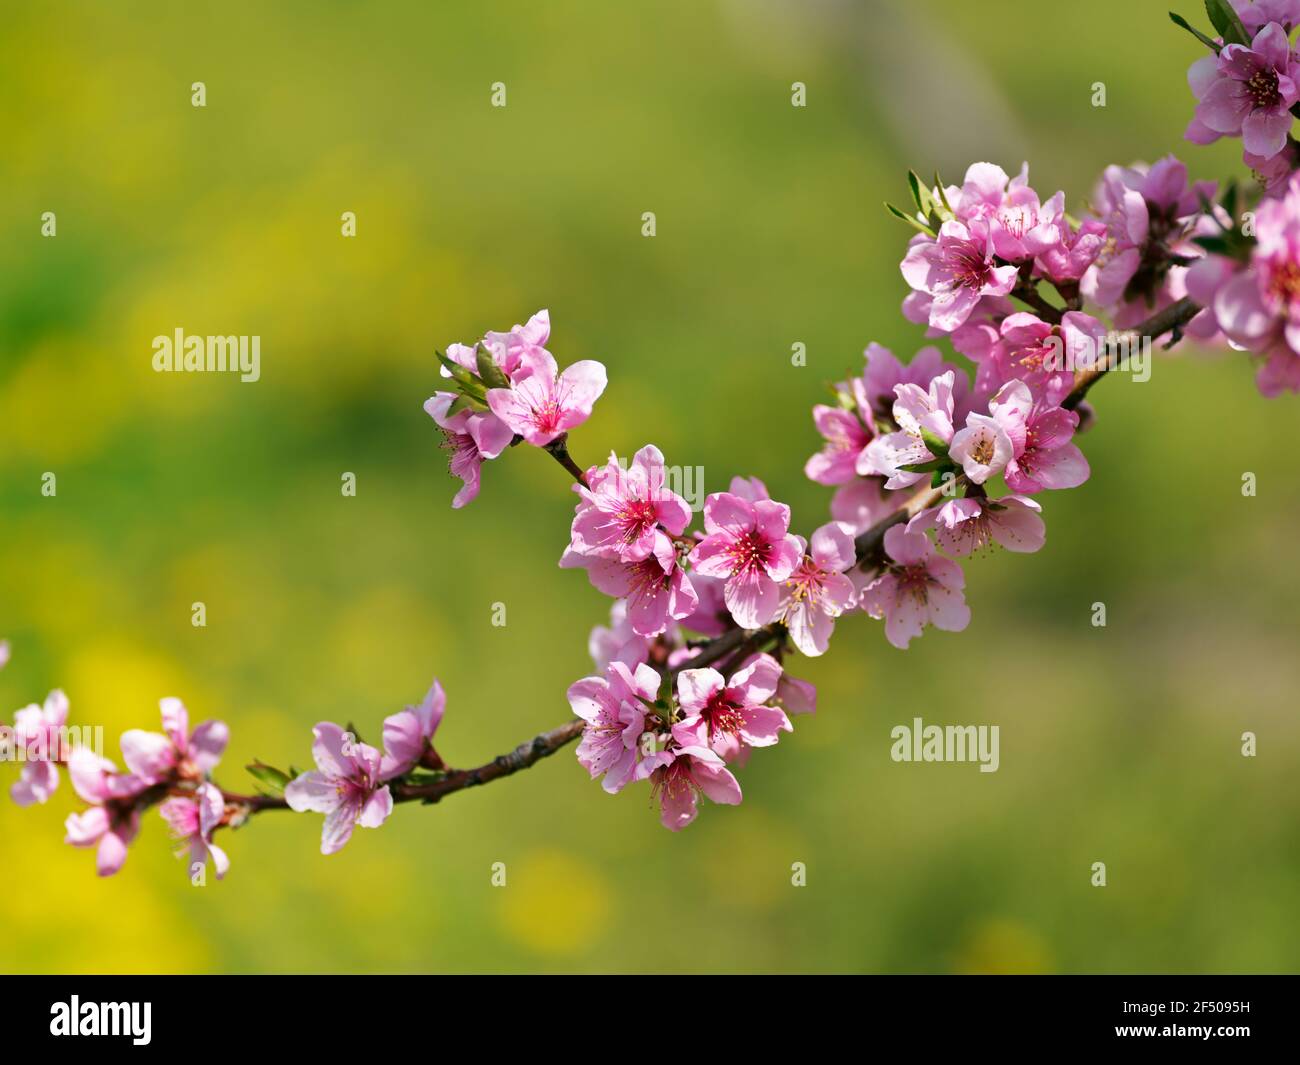 el melocotón florece en una sola rama del árbol Foto de stock